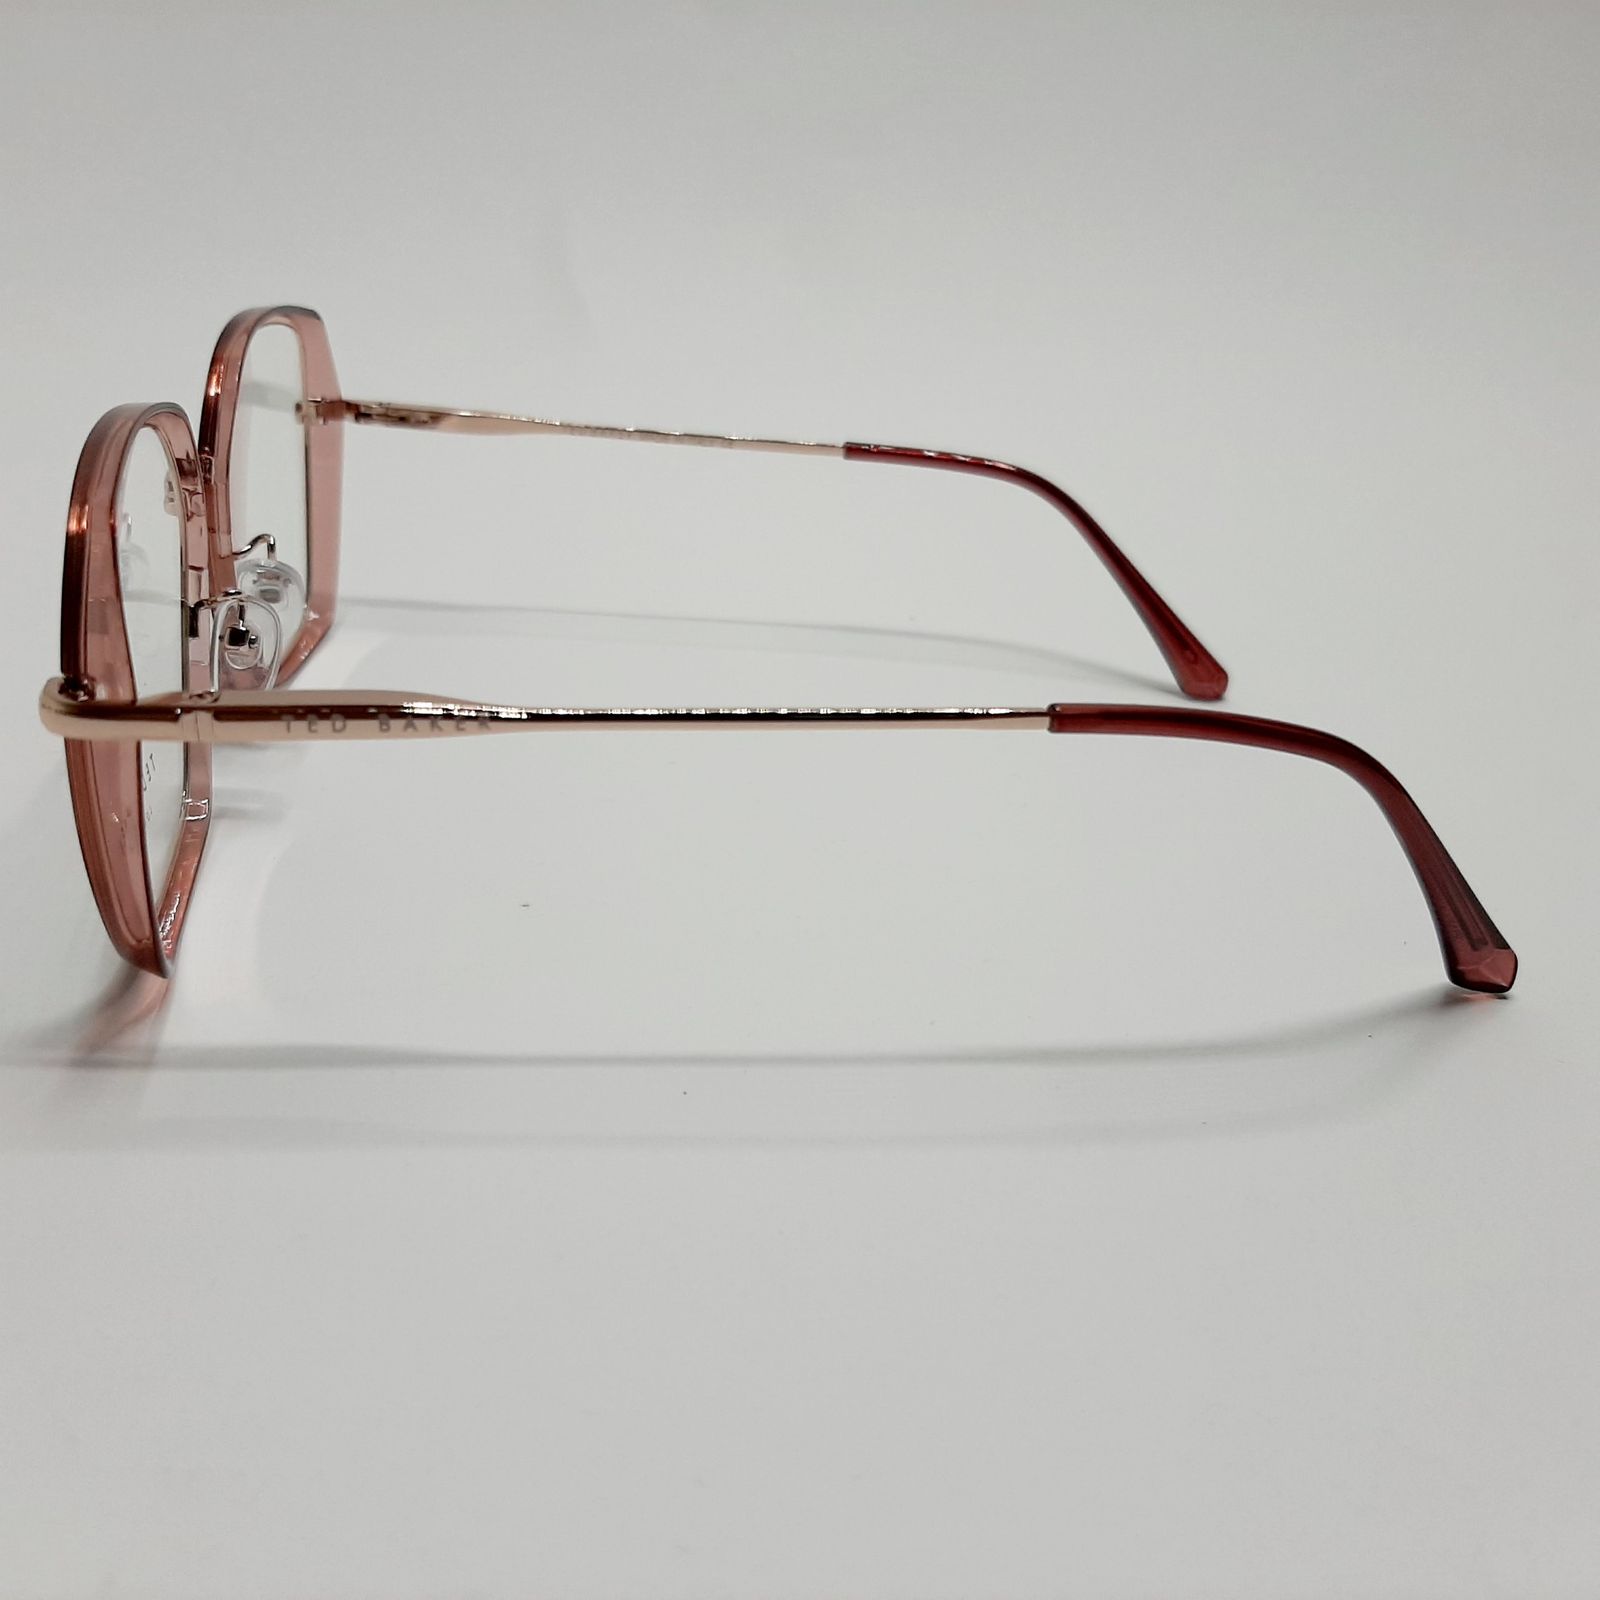 فریم عینک طبی تد بیکر مدل 95583c2 -  - 5